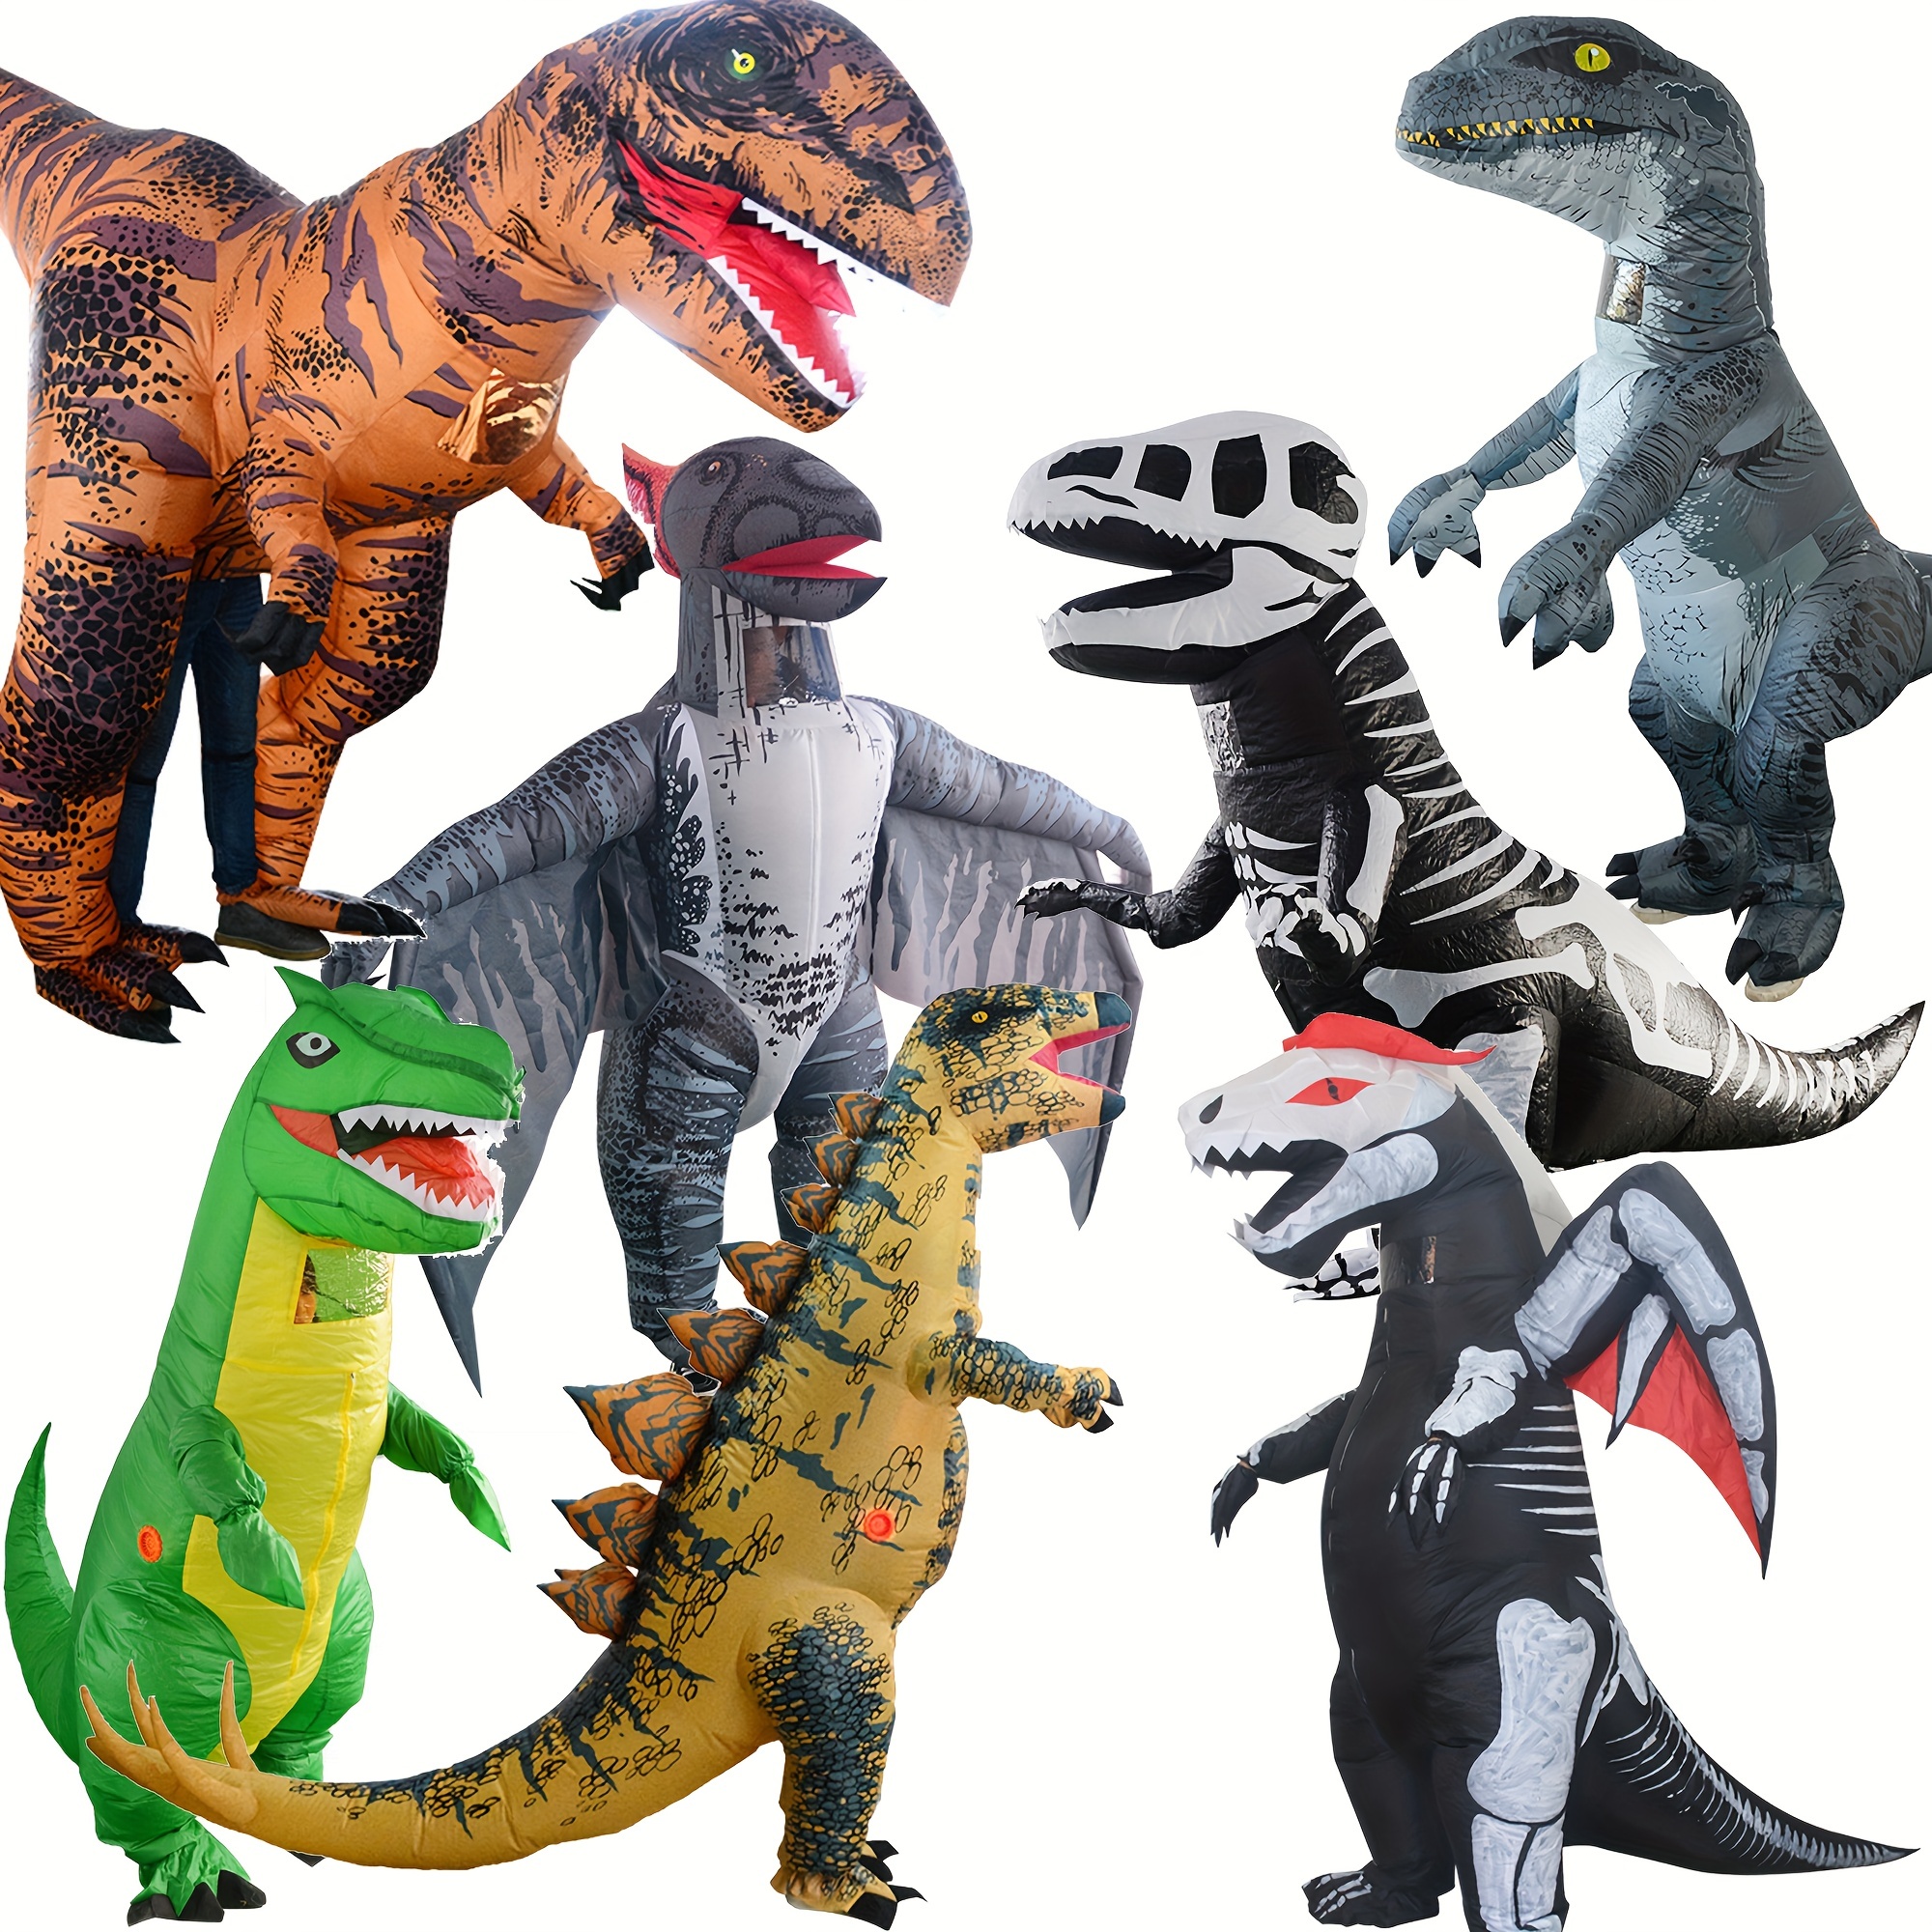 Disfraz Dinosaurio Hinchable infantil - Disfraces No solo fiesta